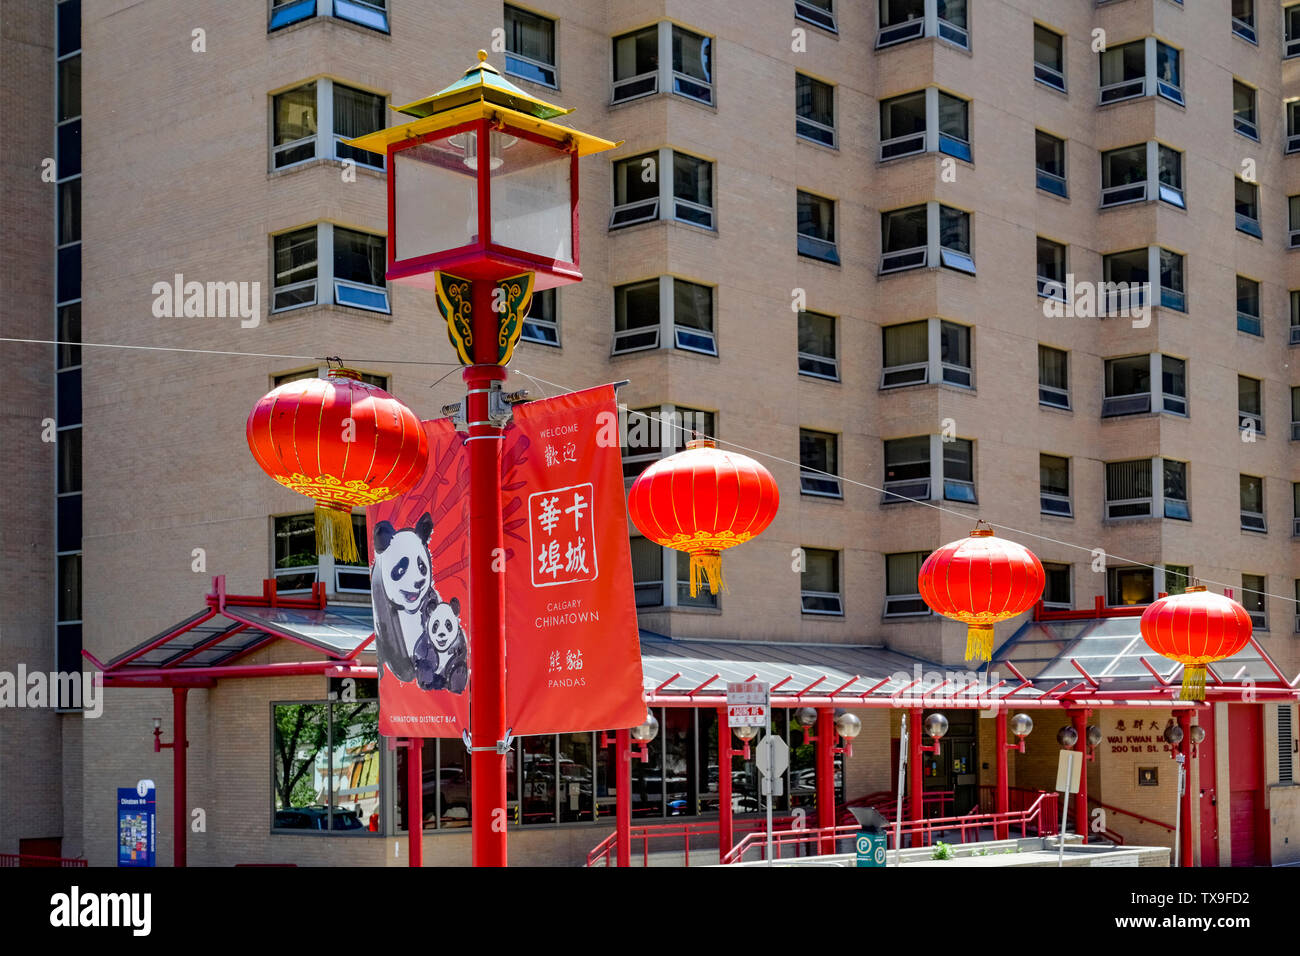 Streetlamp and Chinese lanterns, Chinatown, Calgary, Alberta, Canada Stock Photo